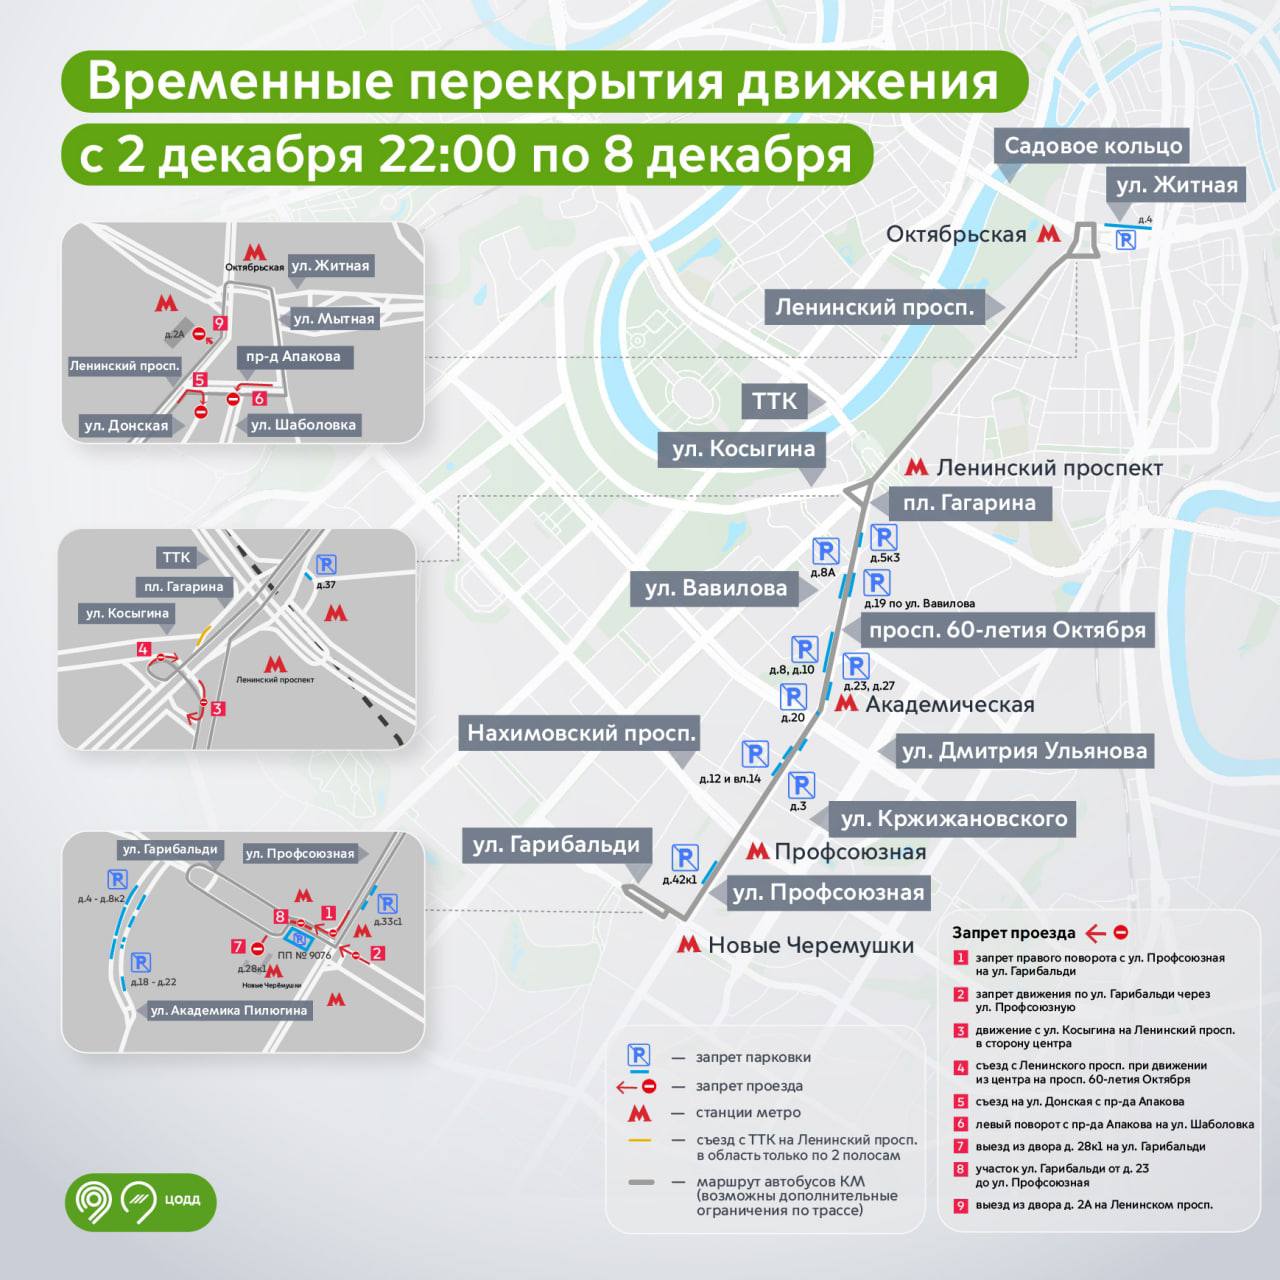 Схема движения изменится 2-8 декабря на юго-западе и в центре Москвы